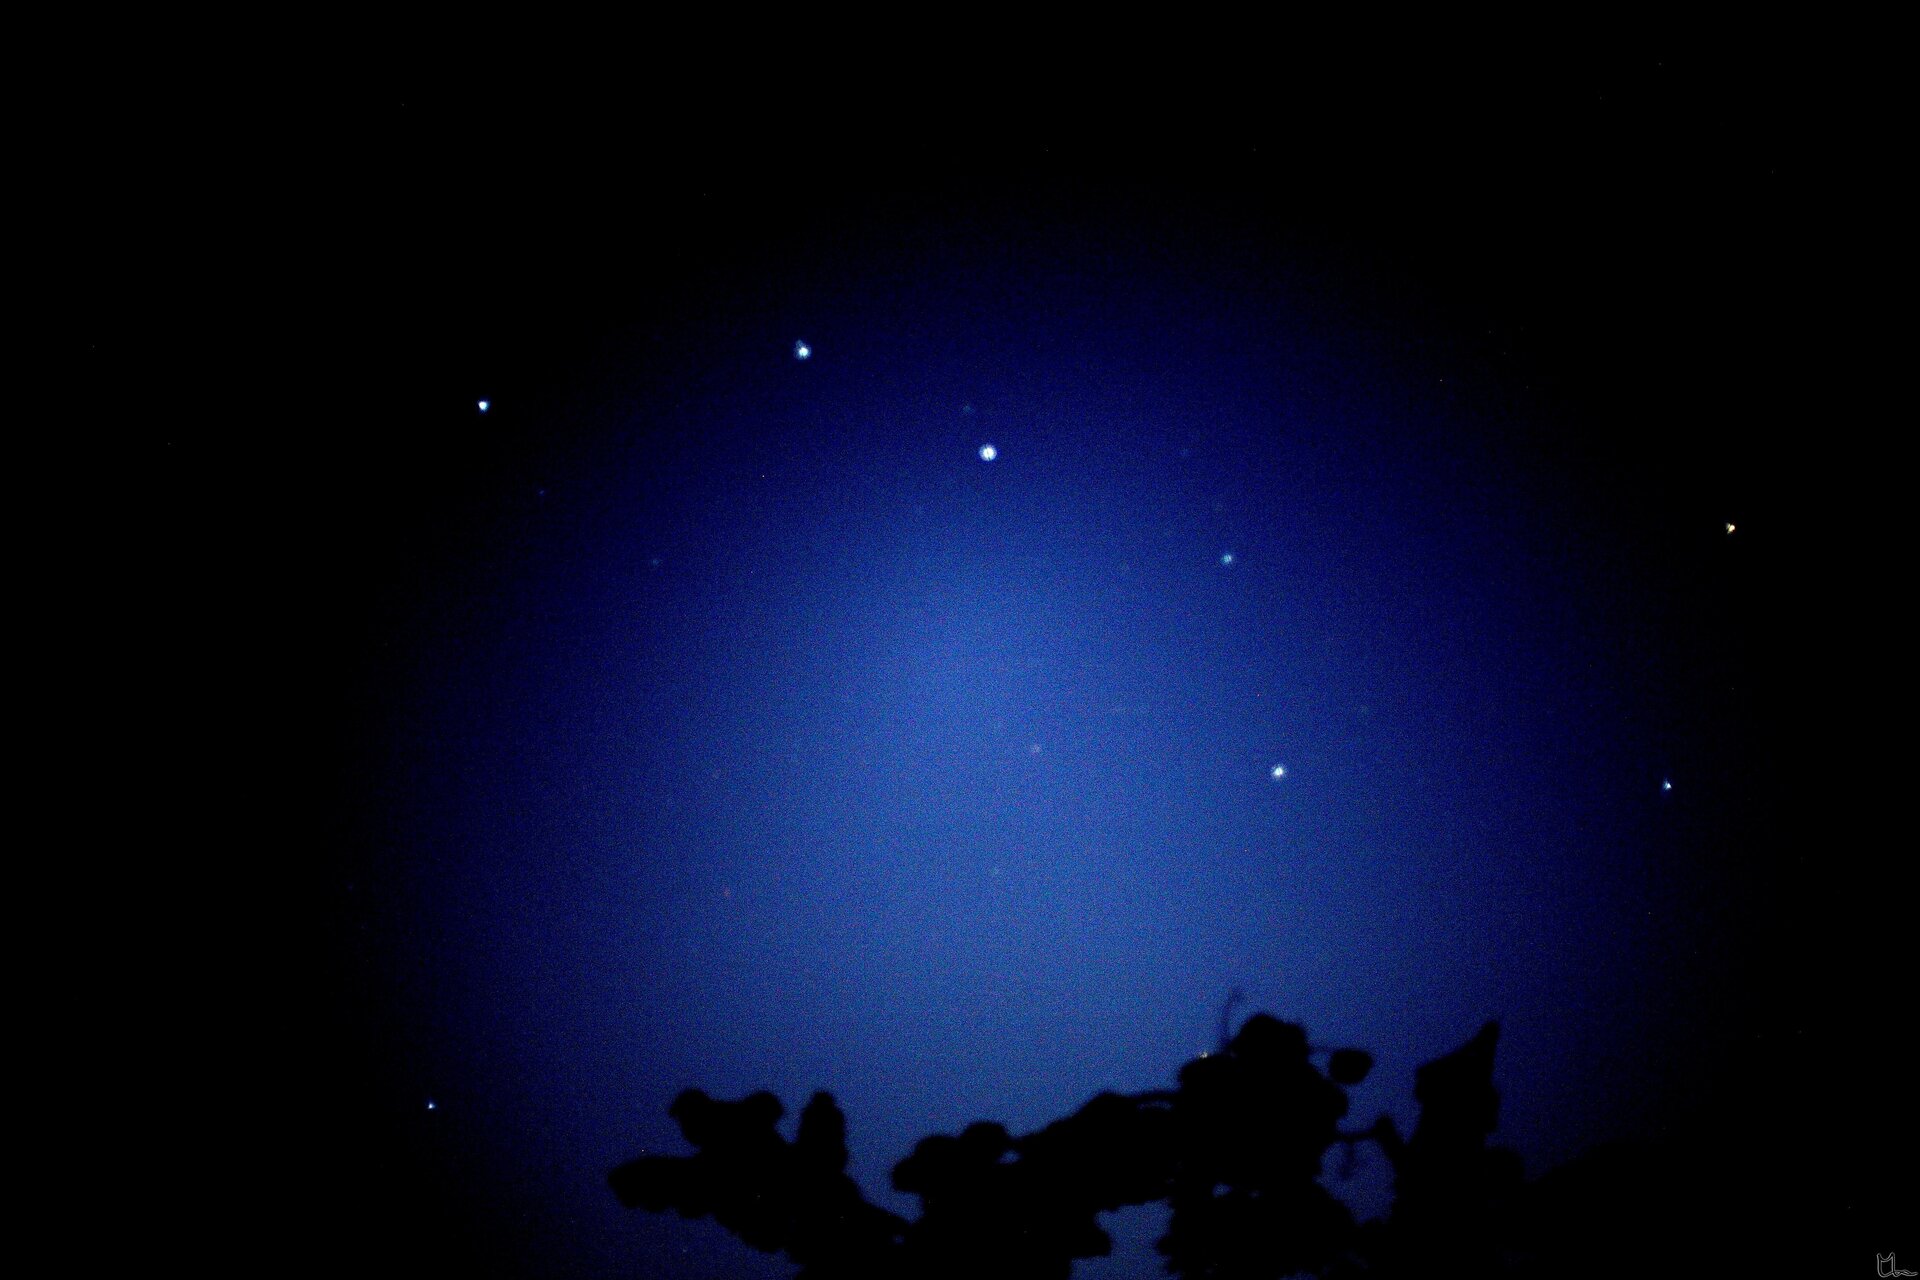 Na zdjęciu niebo nocą, gwiazdozbiór Wielki Wóz składający się z kilku gwiazd ułożonych w kształt wozu z dyszlem z lewej strony.